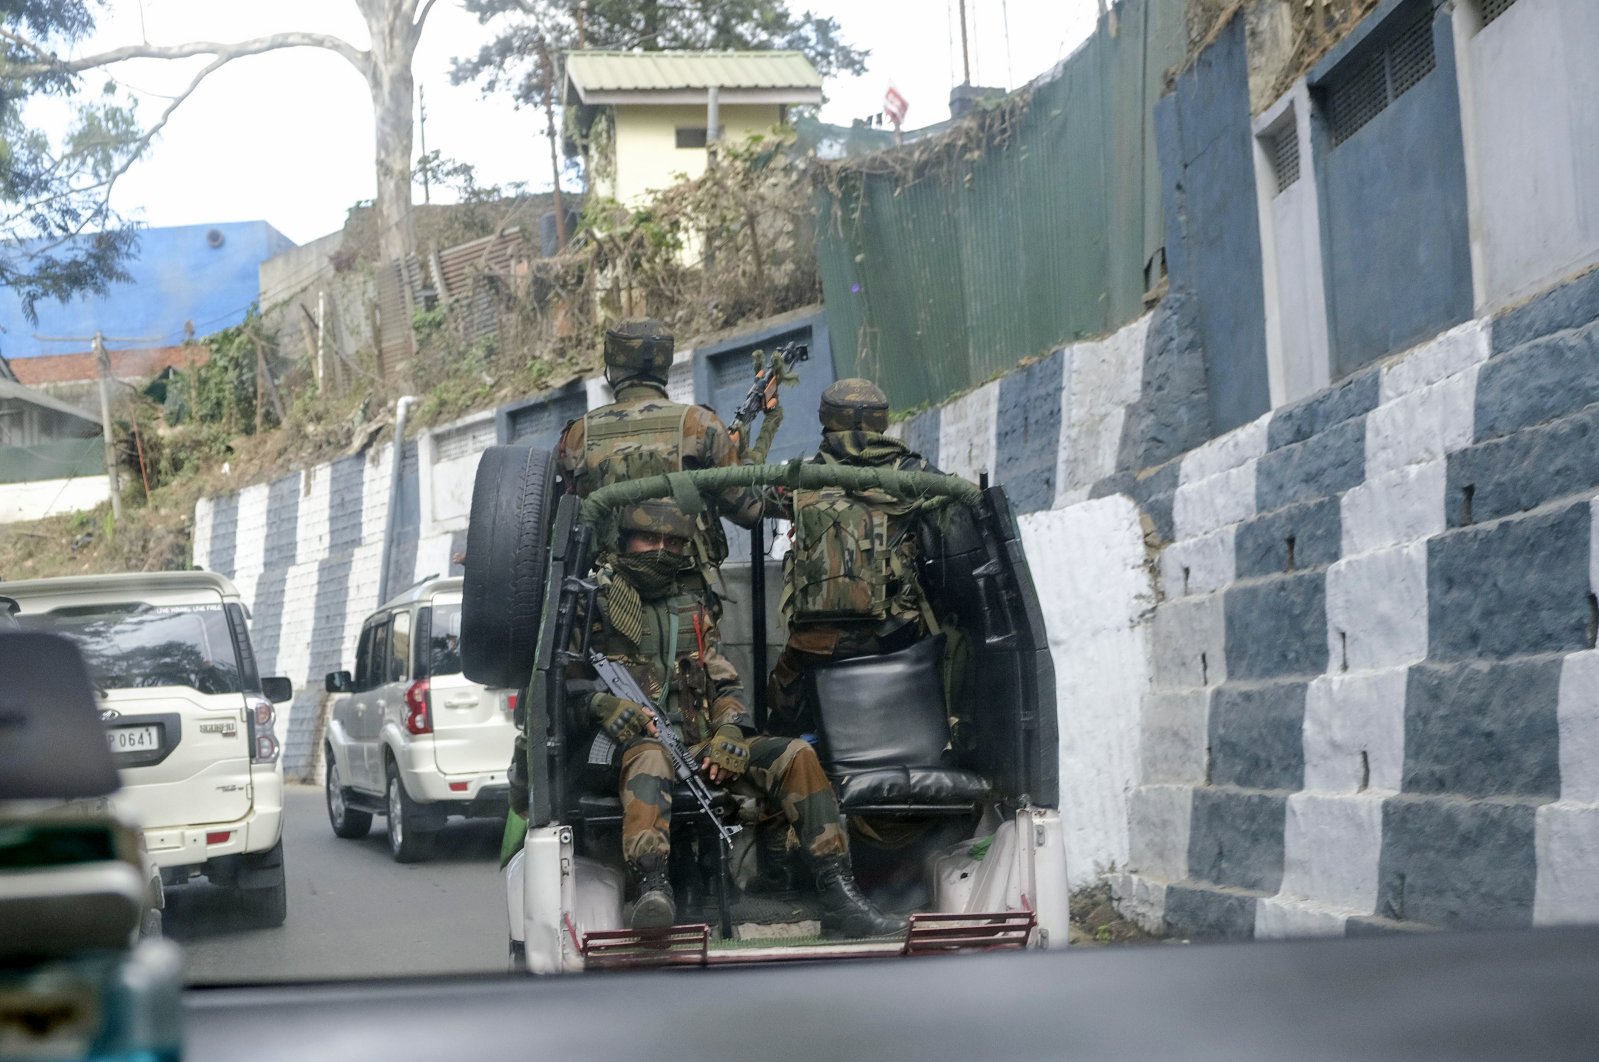 Pembunuhan di timur laut India memicu perdebatan tentang undang-undang militer yang kontroversial